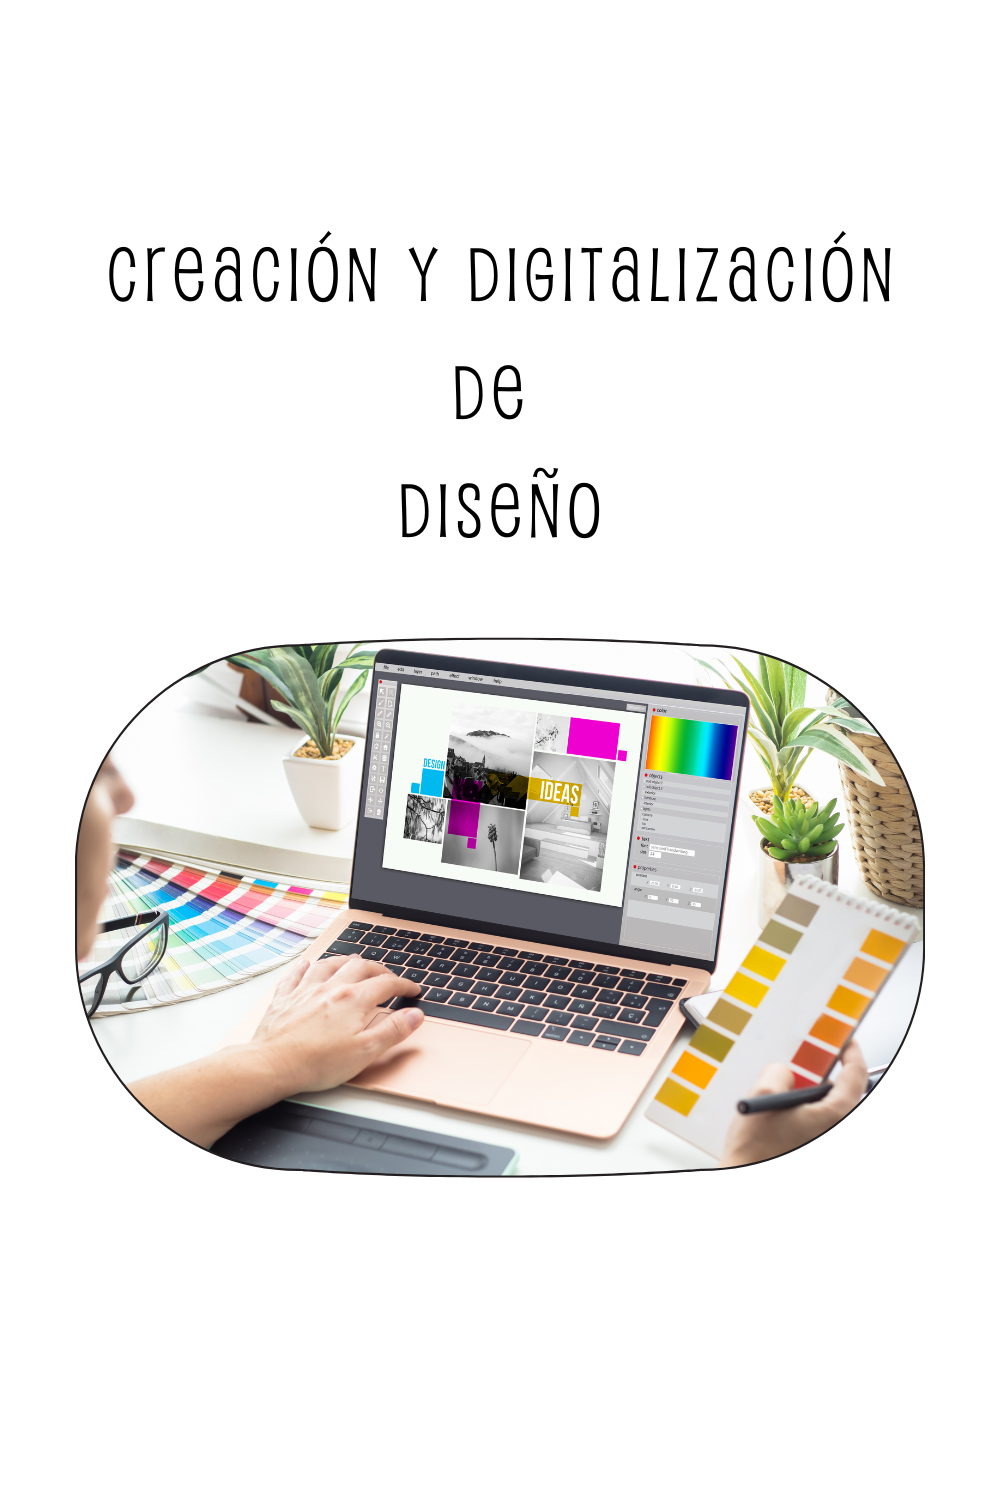 Creación y digitalización de diseño.